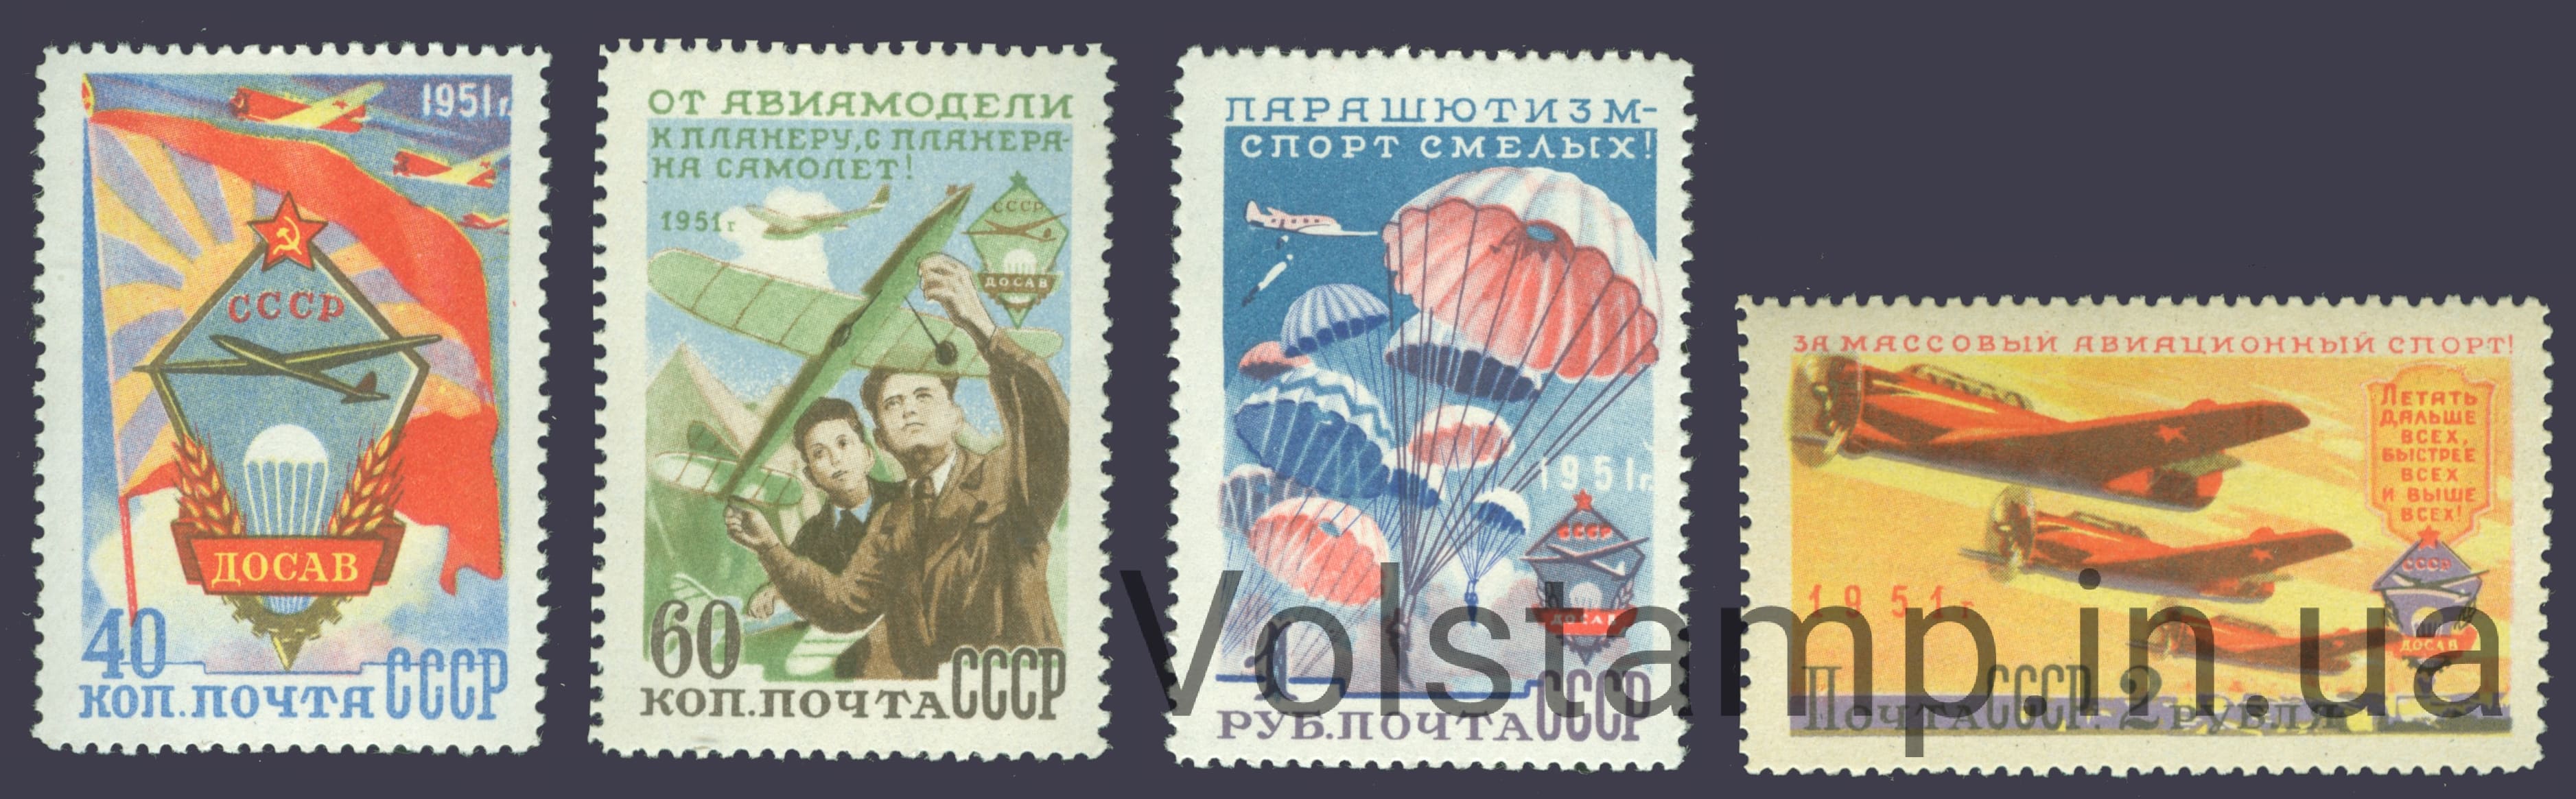 1951 серия марок Всесоюзное добровольное общество содействия авиации (ДОСАВ) - MNH №1558-1561